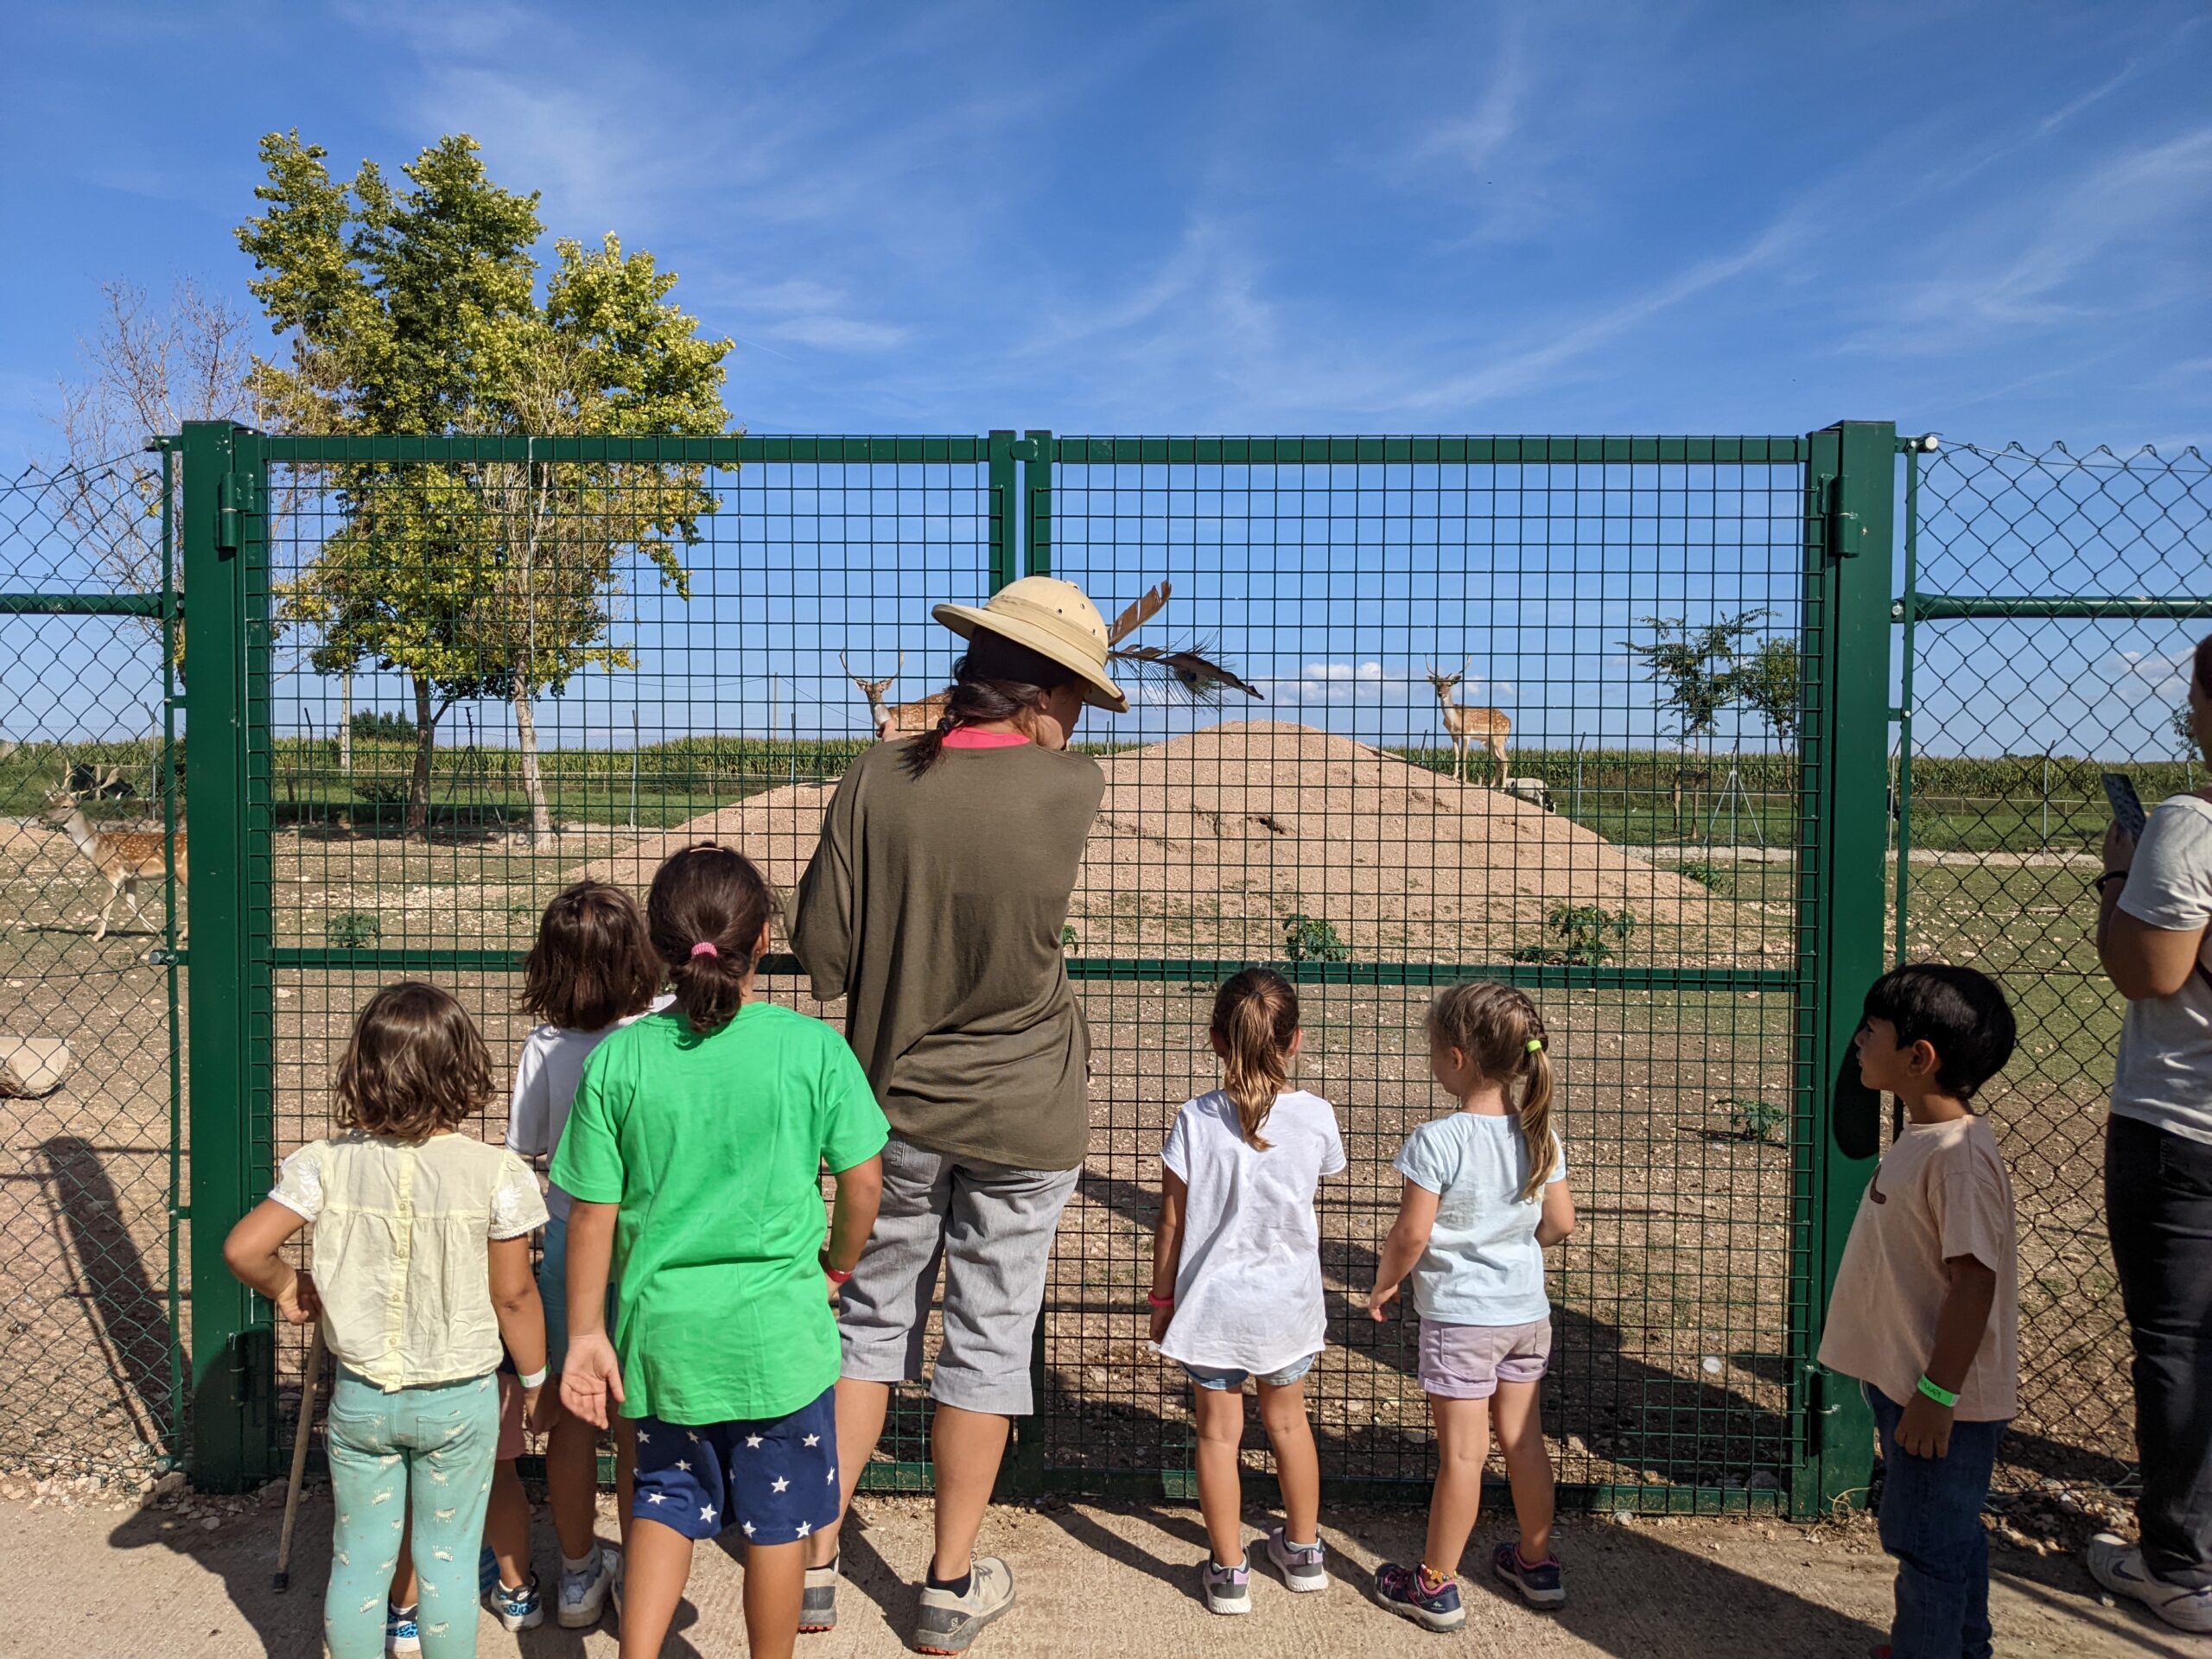 Monitor ensenyant als alumnes de la granja escola la Manreana un grup de cèrvols.